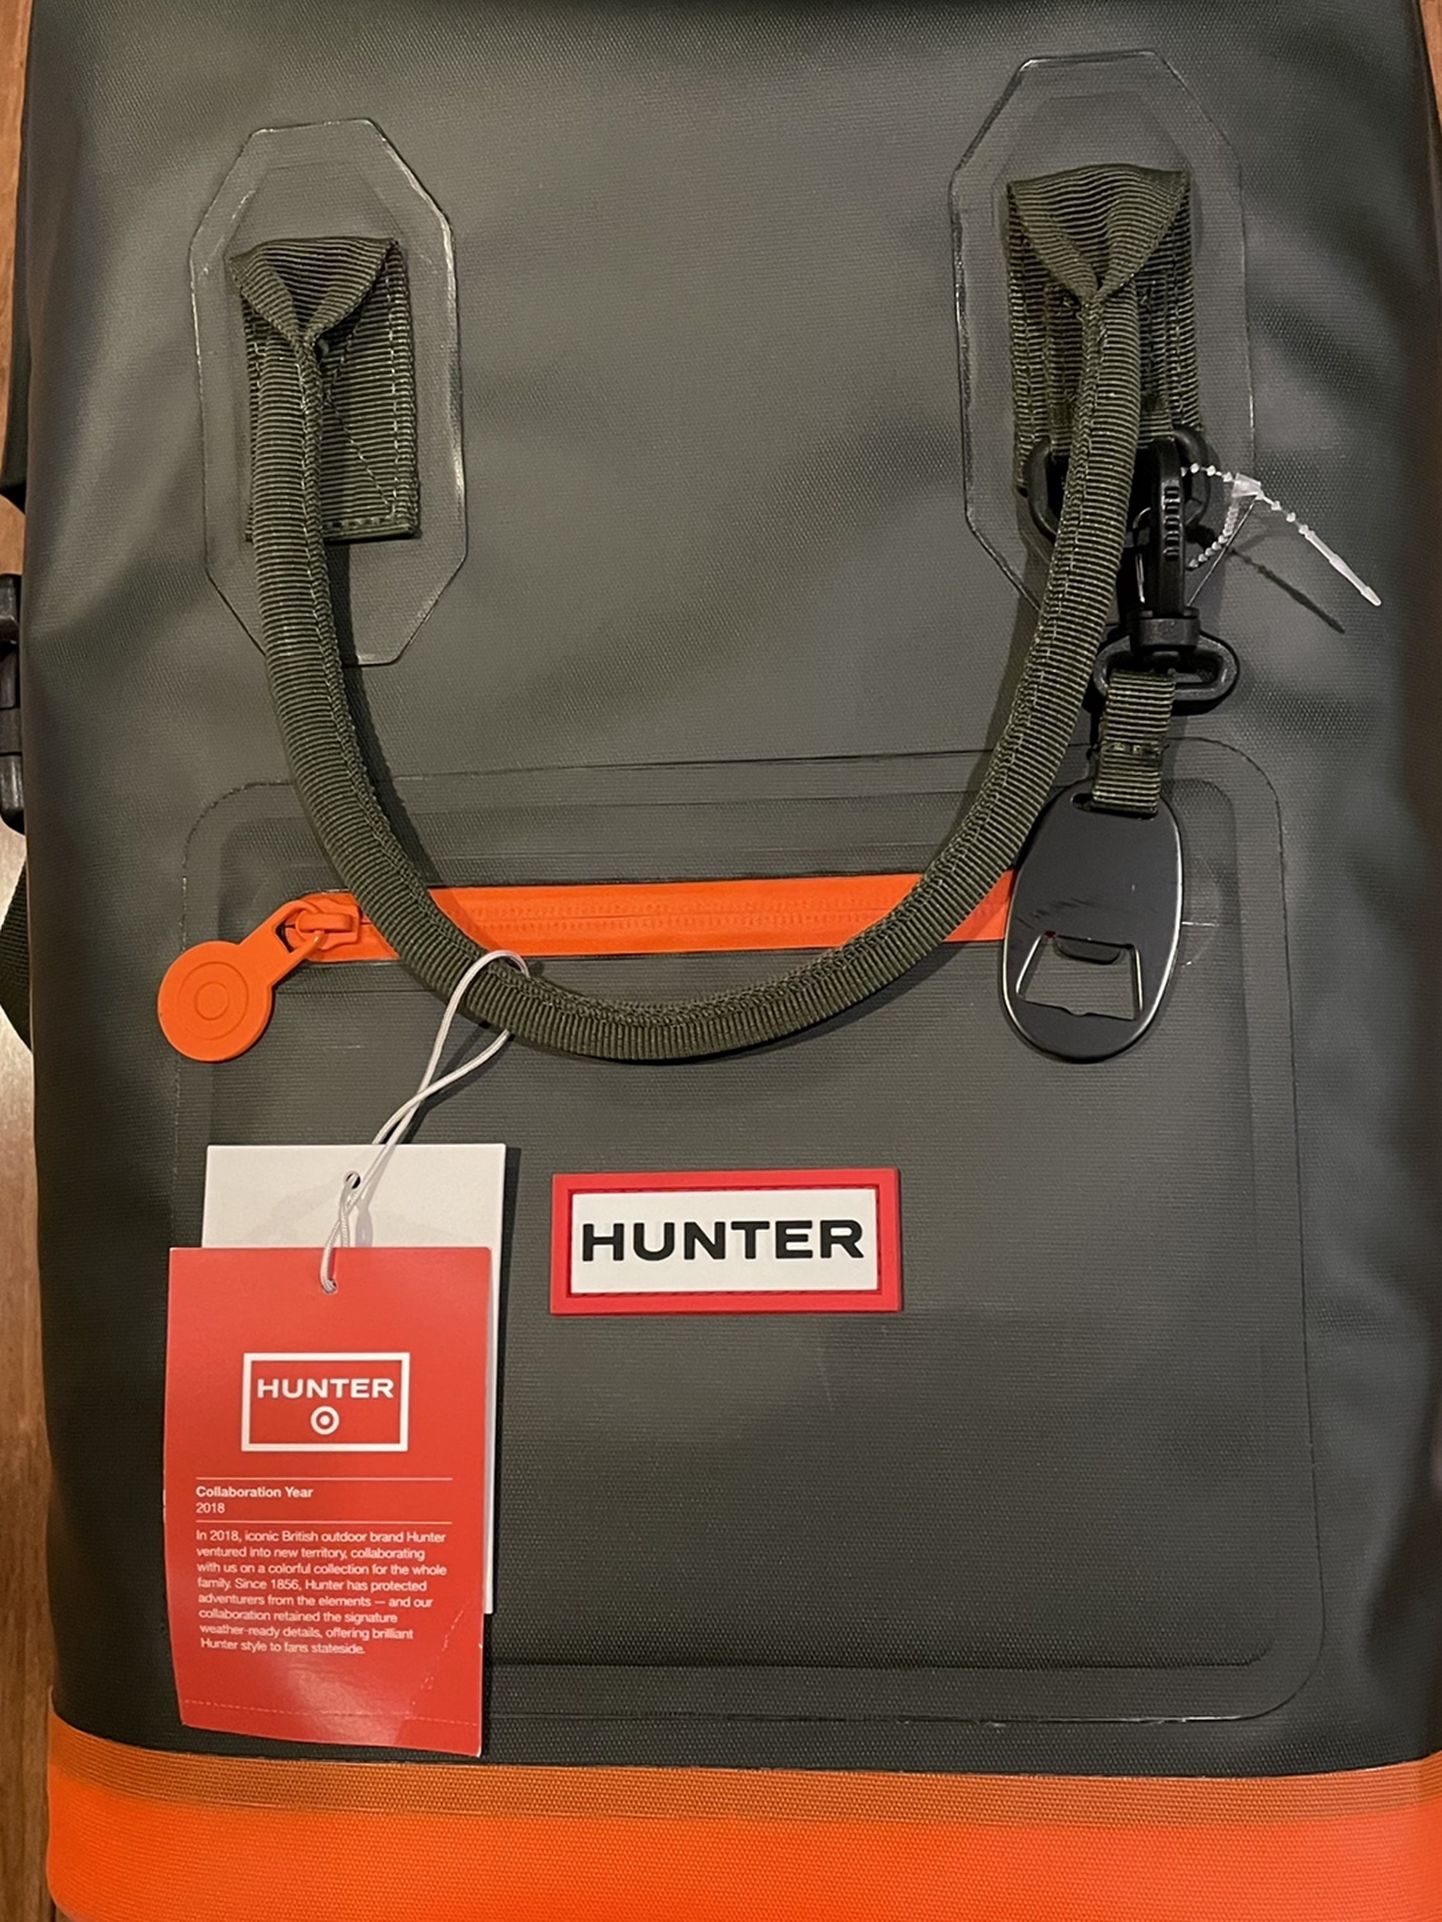 Hunter Boots Backpack Cooler